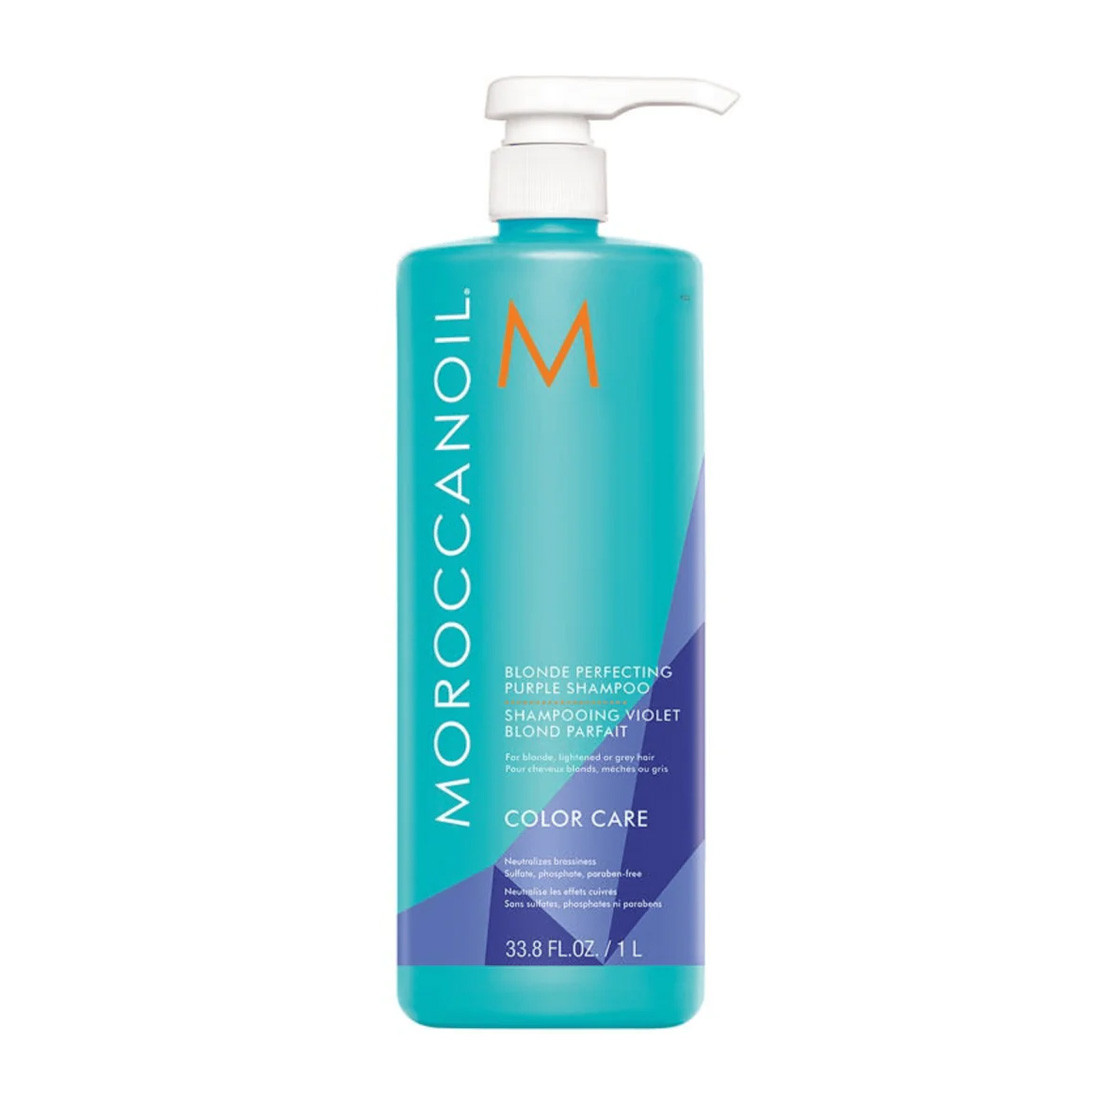 Тонирующий фиолетовый шампунь для блонда Moroccanoil Blonde Perfecting Purple Shampoo